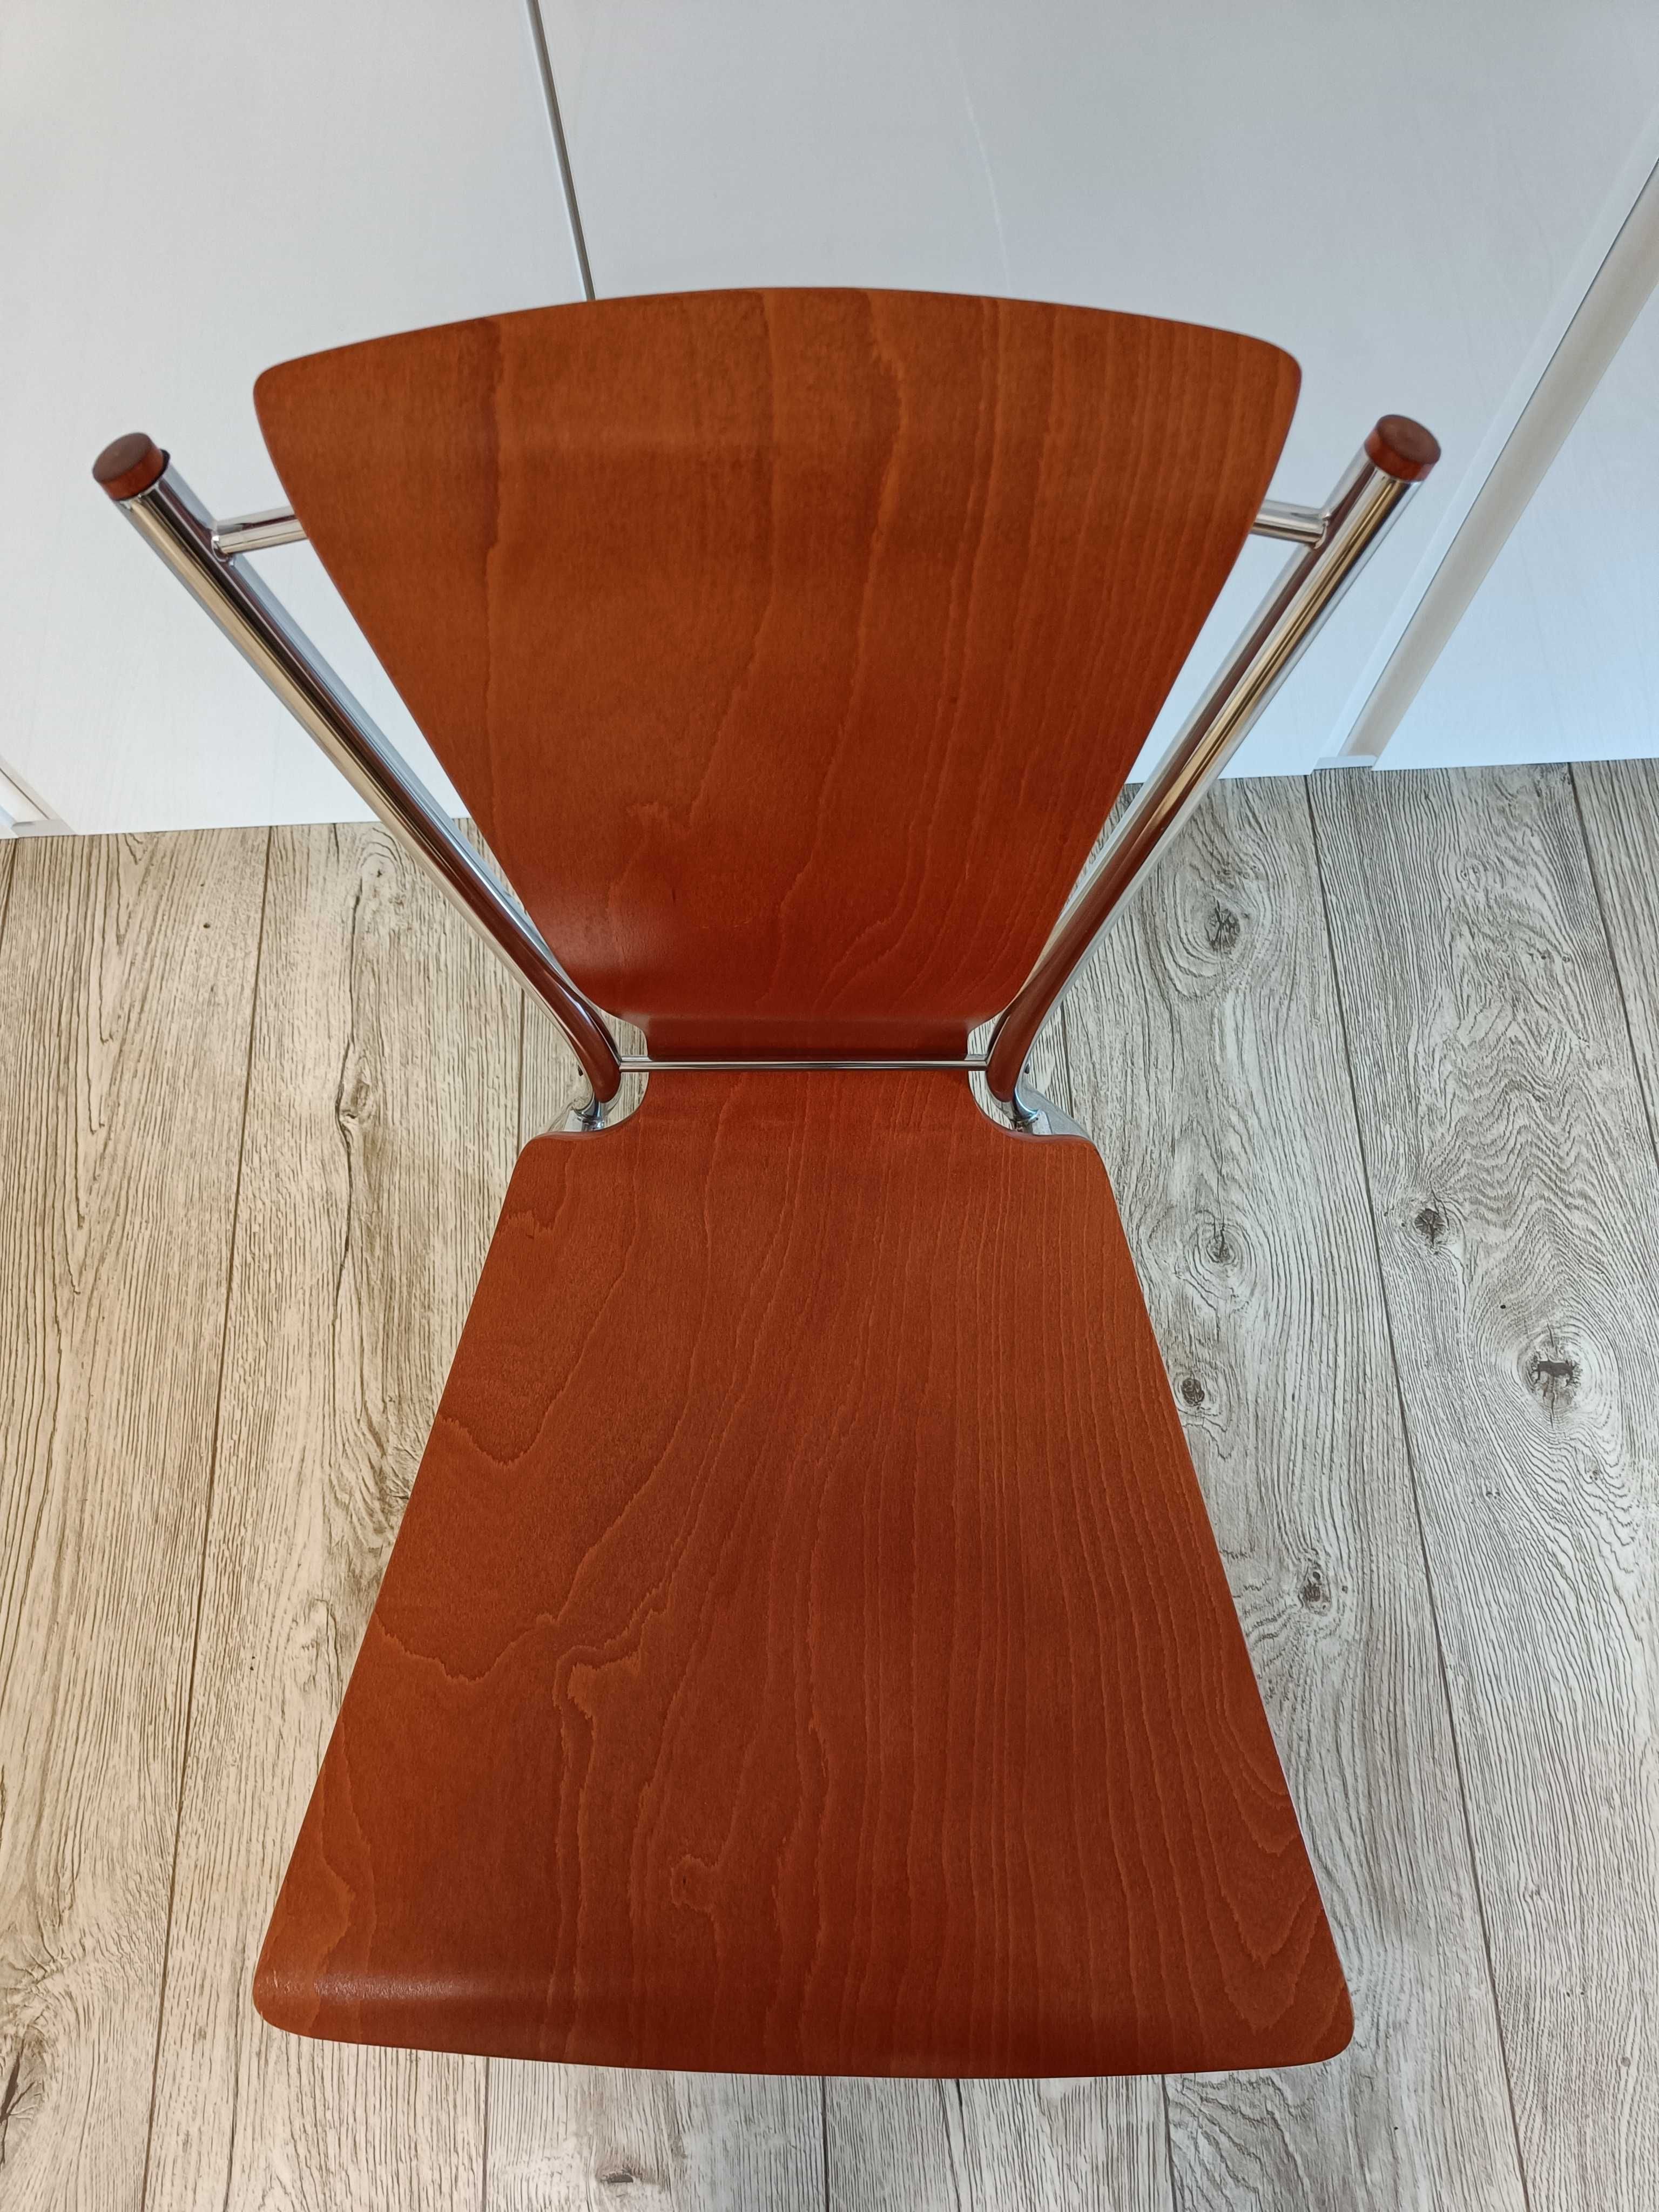 Wielofunkcyjne 4 krzesła, modny oryginalny kształt, wygodne i stabilne